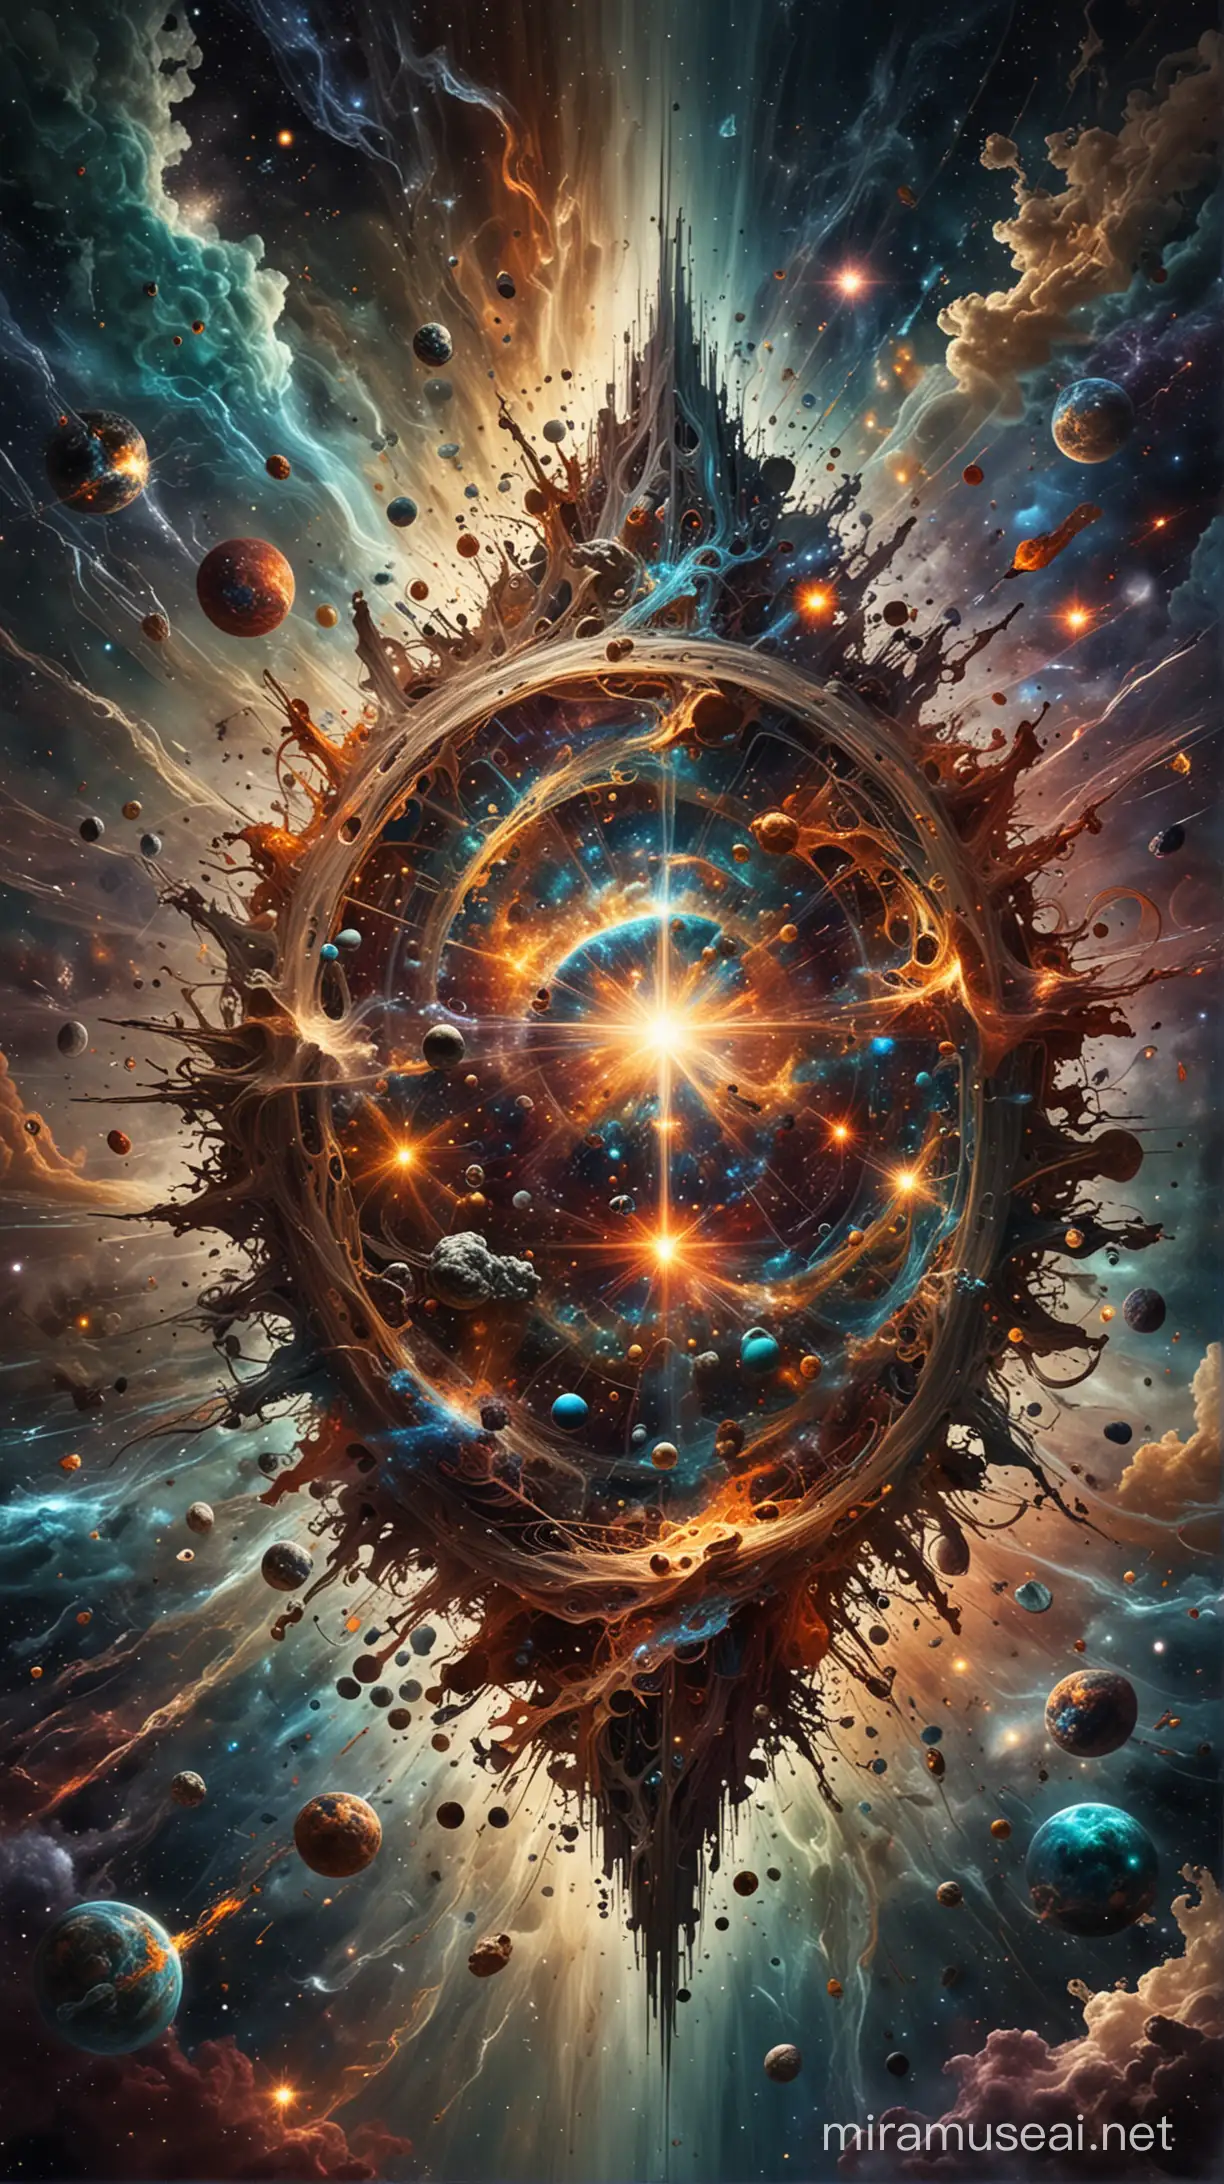 Una imagen que represente el Caos primordial, con elementos abstractos y caóticos que simbolicen el inicio del universo. 